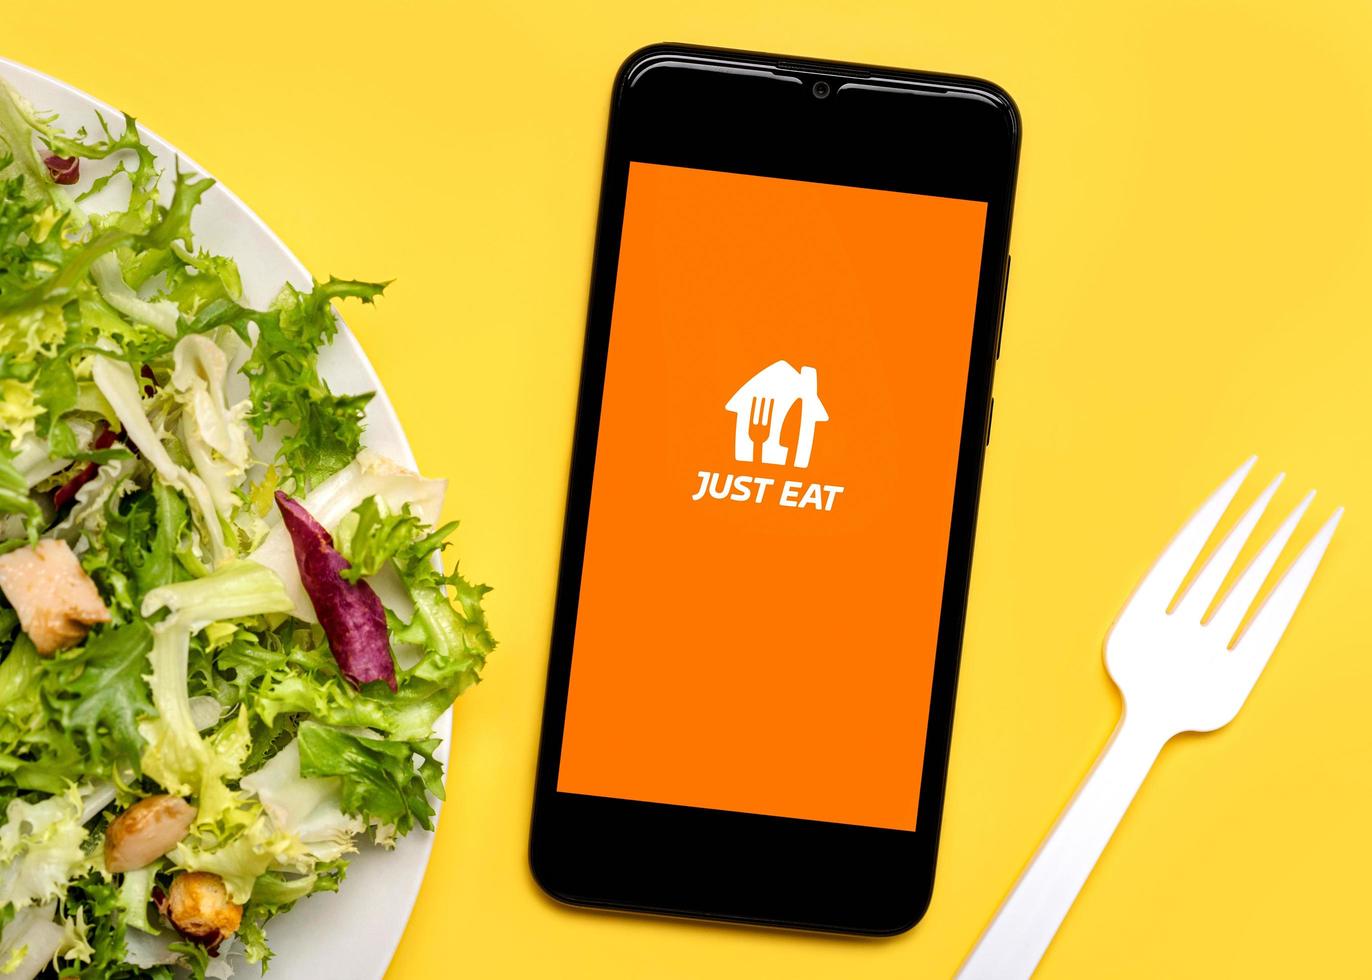 il suffit de manger l'icône de l'application sur l'écran noir du smartphone avec une assiette de salade de laitue et une fourchette en plastique blanc photo